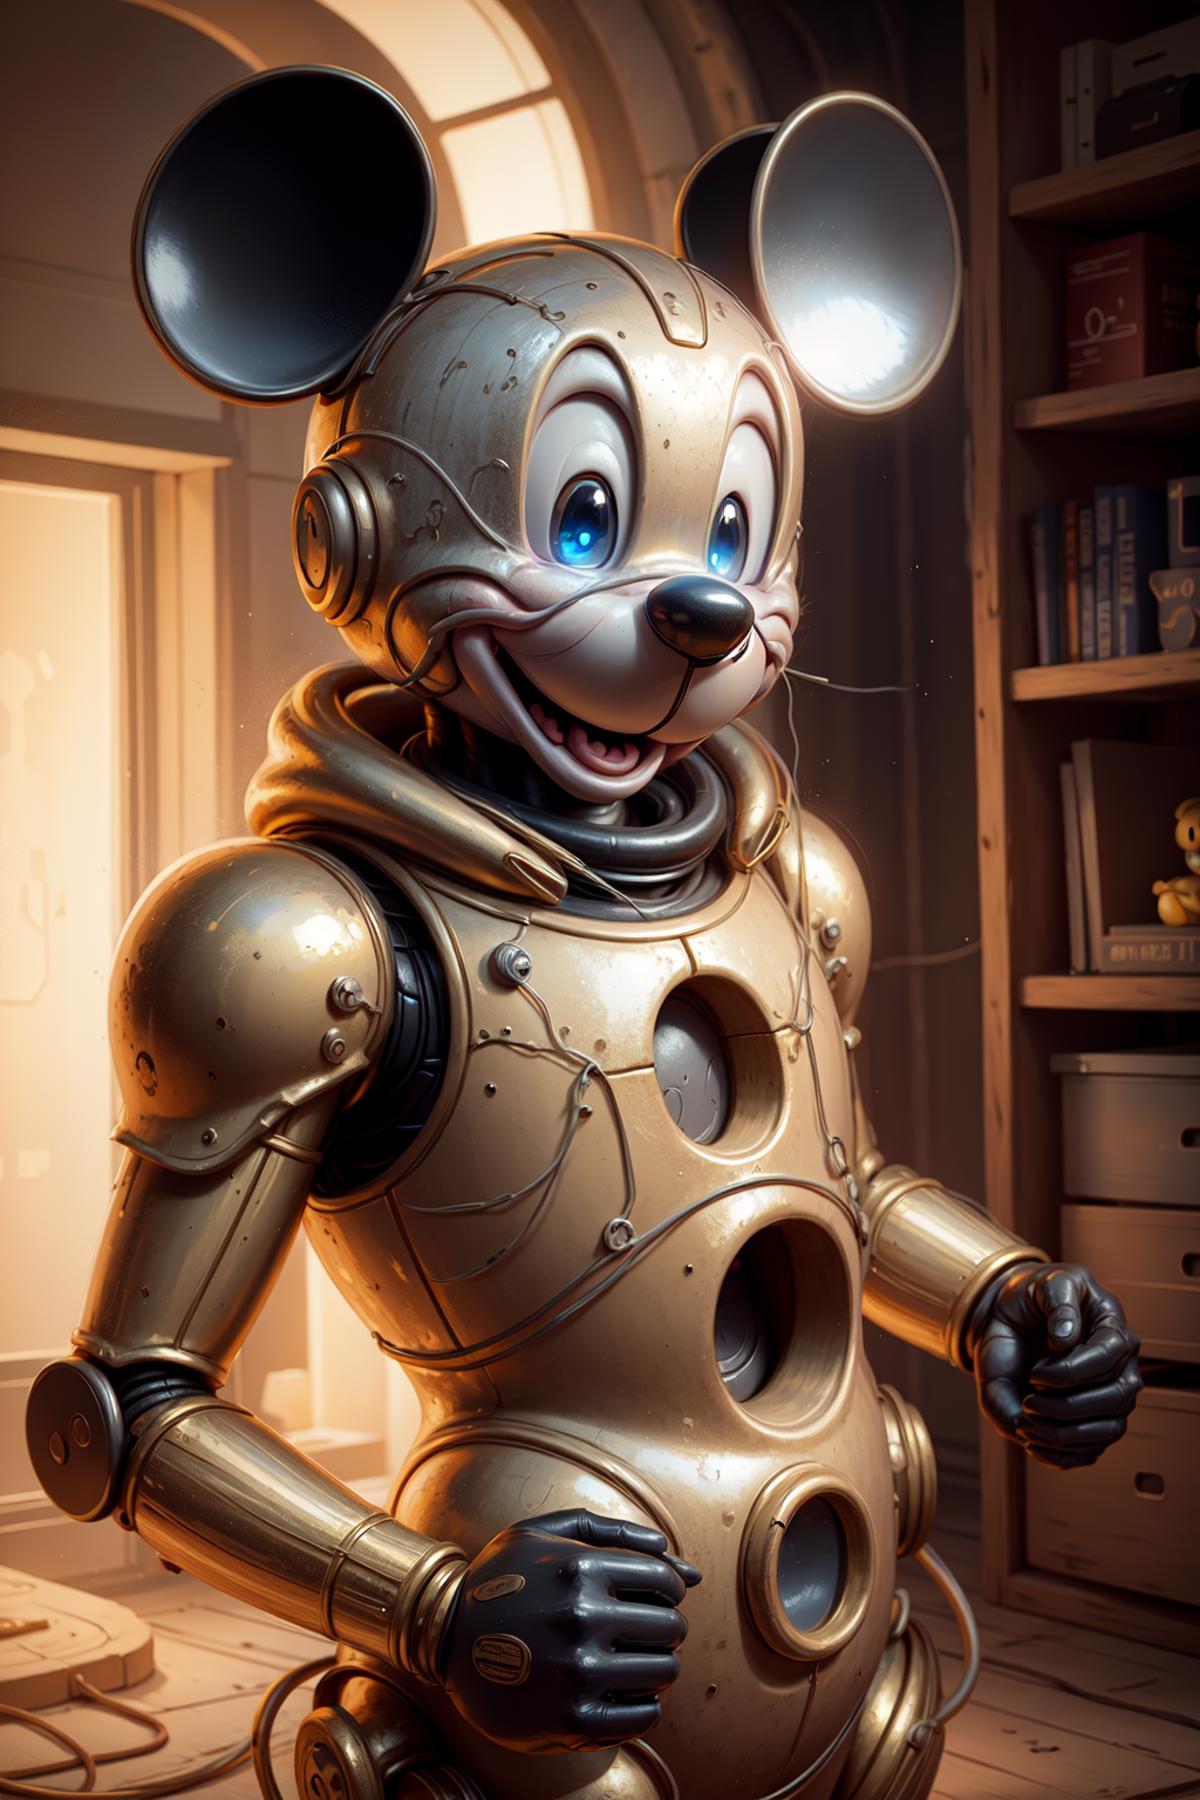 Micky Mouse LoRA image by LDWorksDervlex